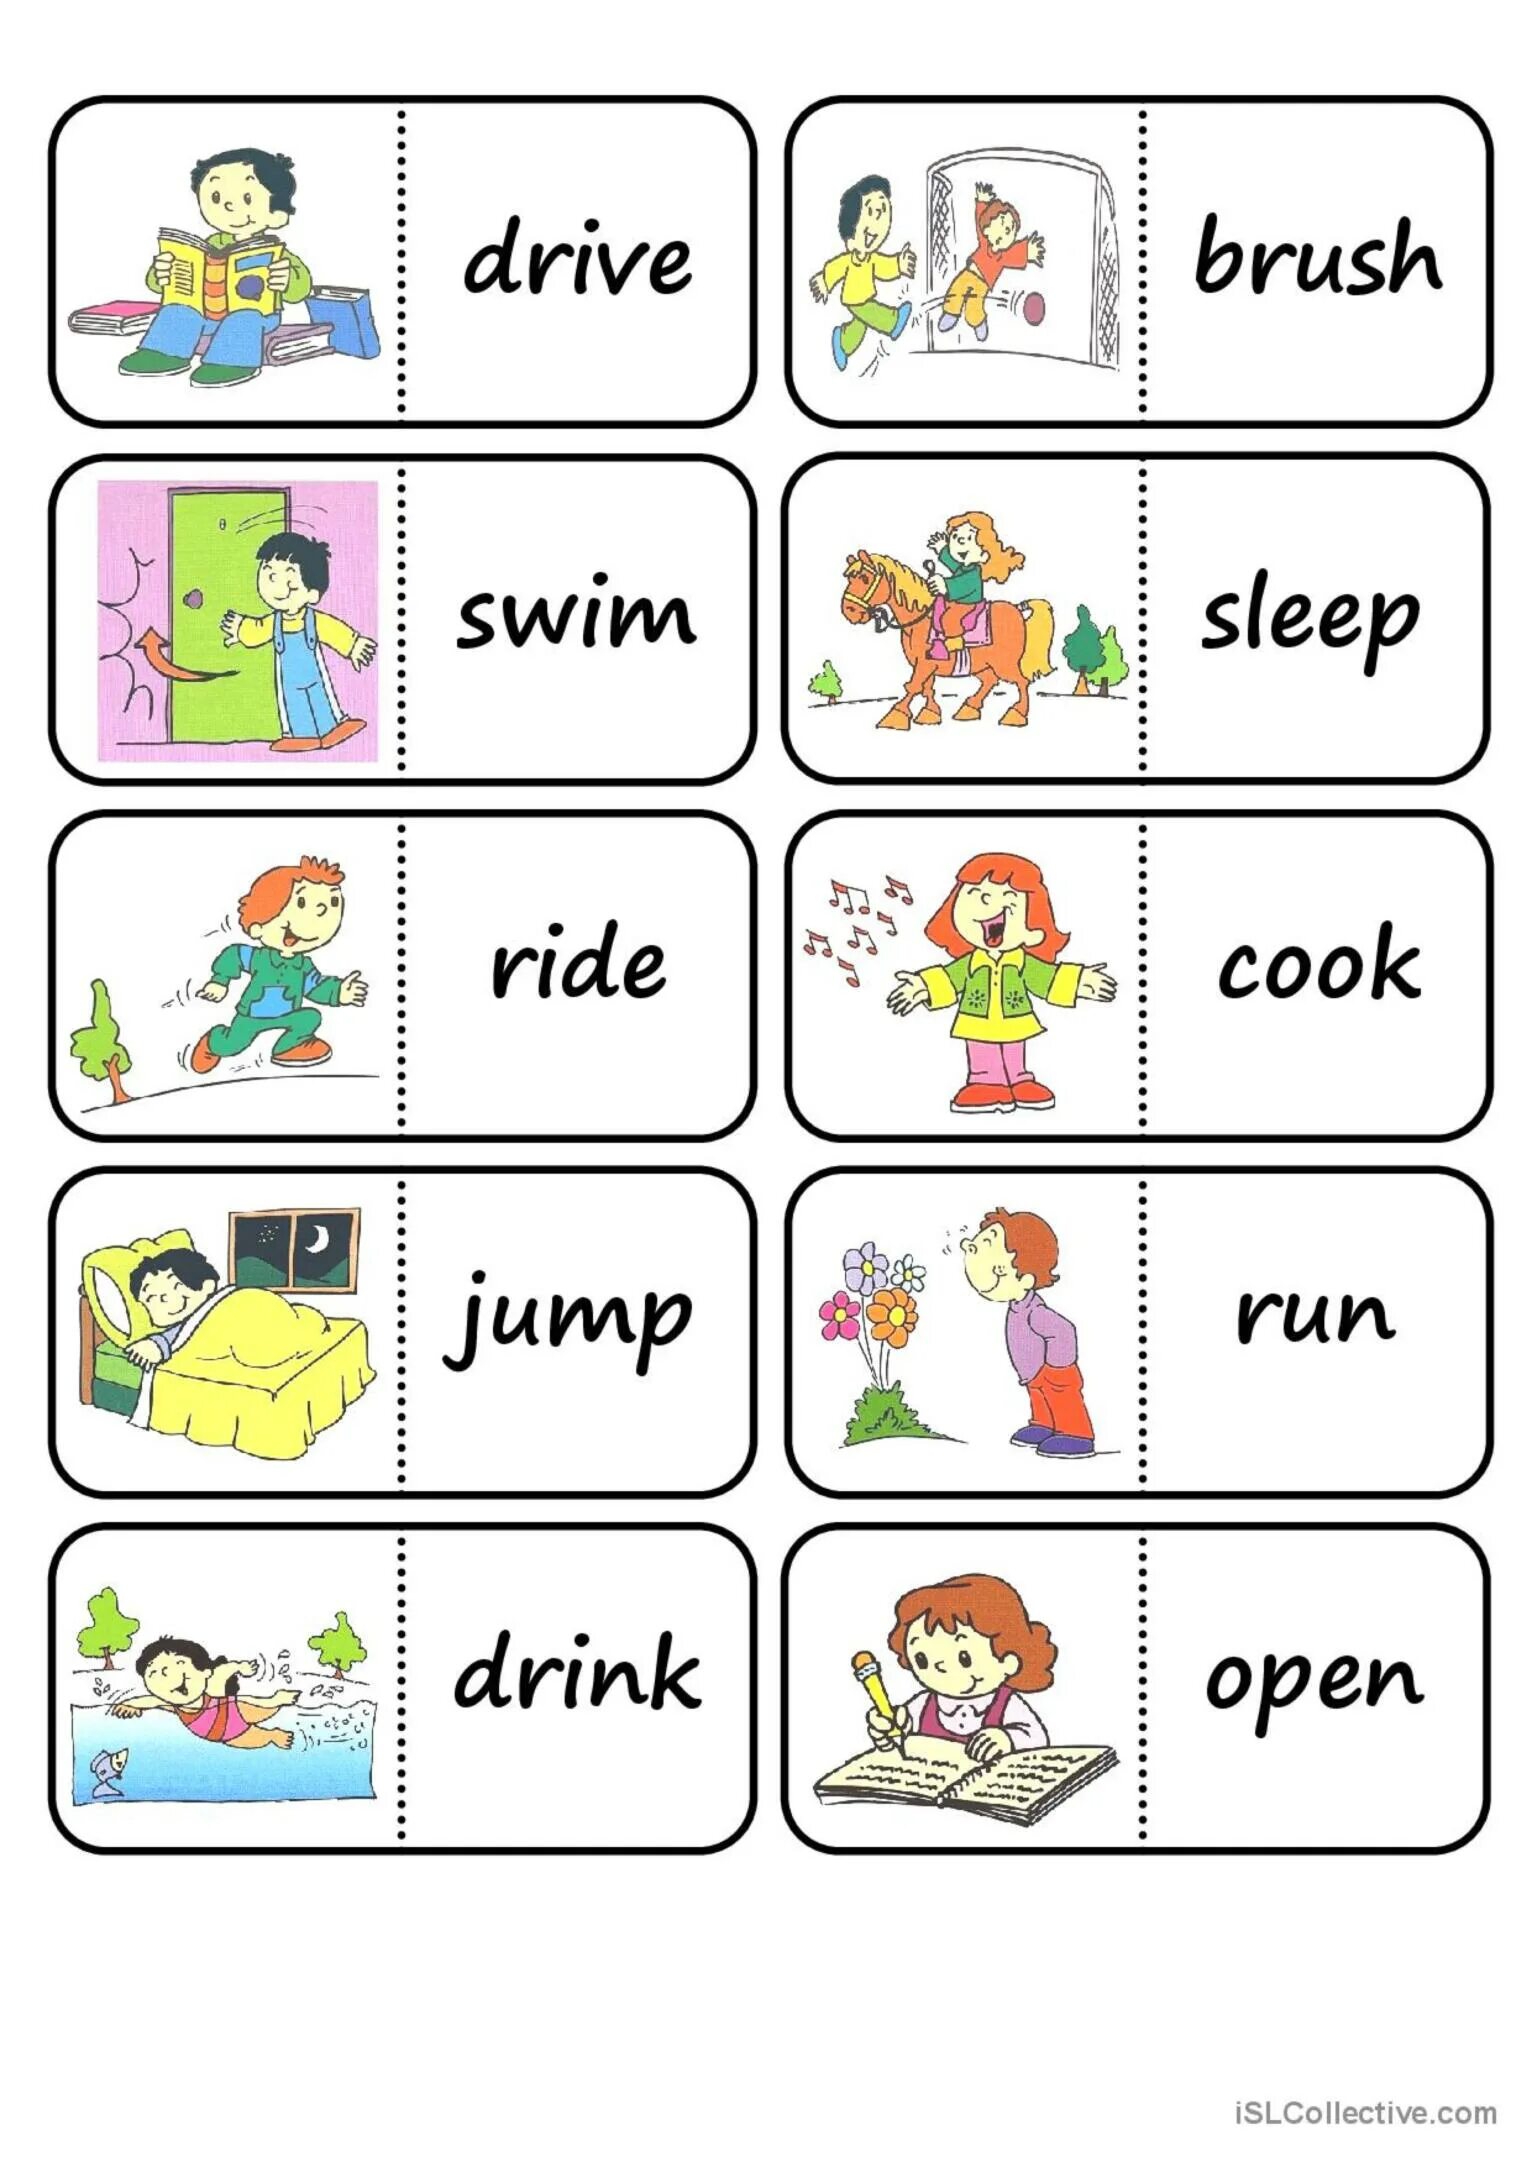 Глаголы в английском языке для детей. Карточки Actions. Глаголы движения английский для малышей. Английские глаголы в картинках. Картинки действий на английском